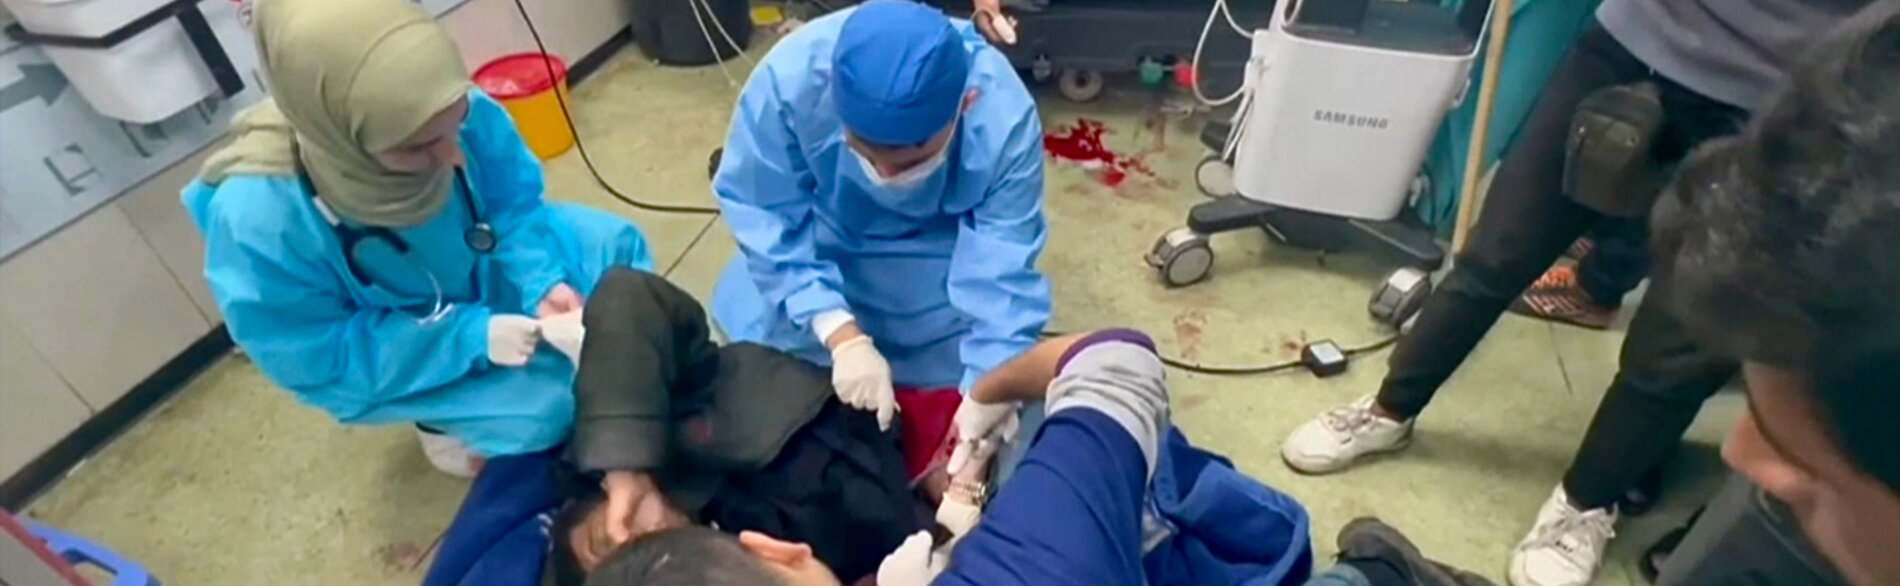 فريق طبي يعالج الإصابات البالغة على الأرض في مستشفى ناصر، خانيونس. لقطة من فيديو أنتجته منظمة الصحة العالمية، كانون الثاني/يناير 2024